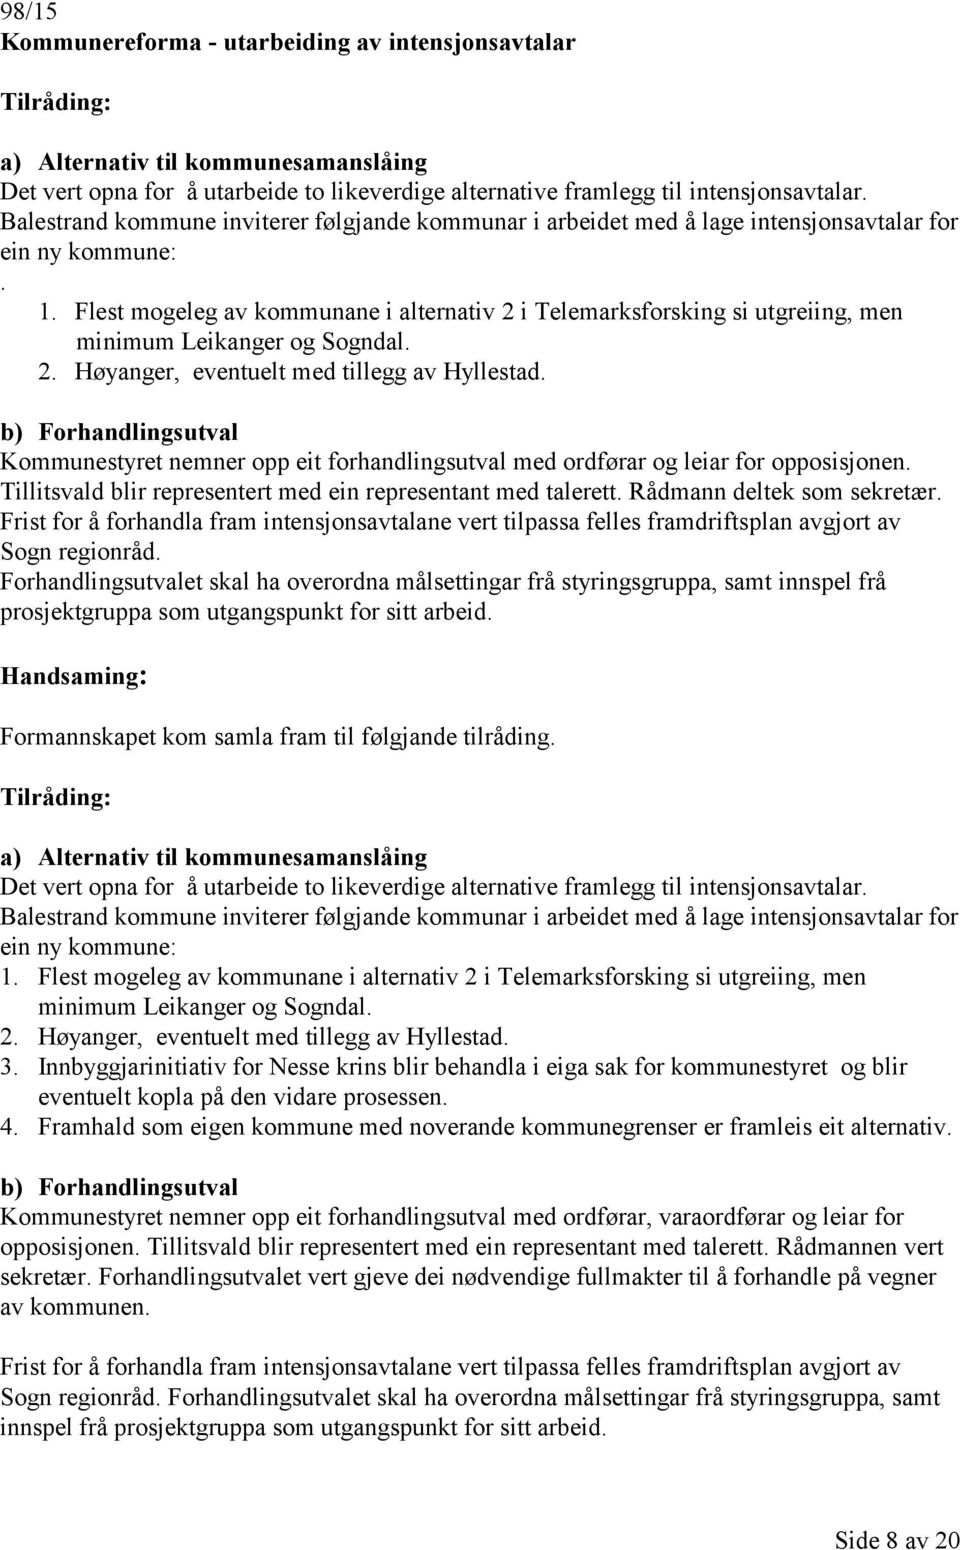 Flest mogeleg av kommunane i alternativ 2 i Telemarksforsking si utgreiing, men minimum Leikanger og Sogndal. 2. Høyanger, eventuelt med tillegg av Hyllestad.